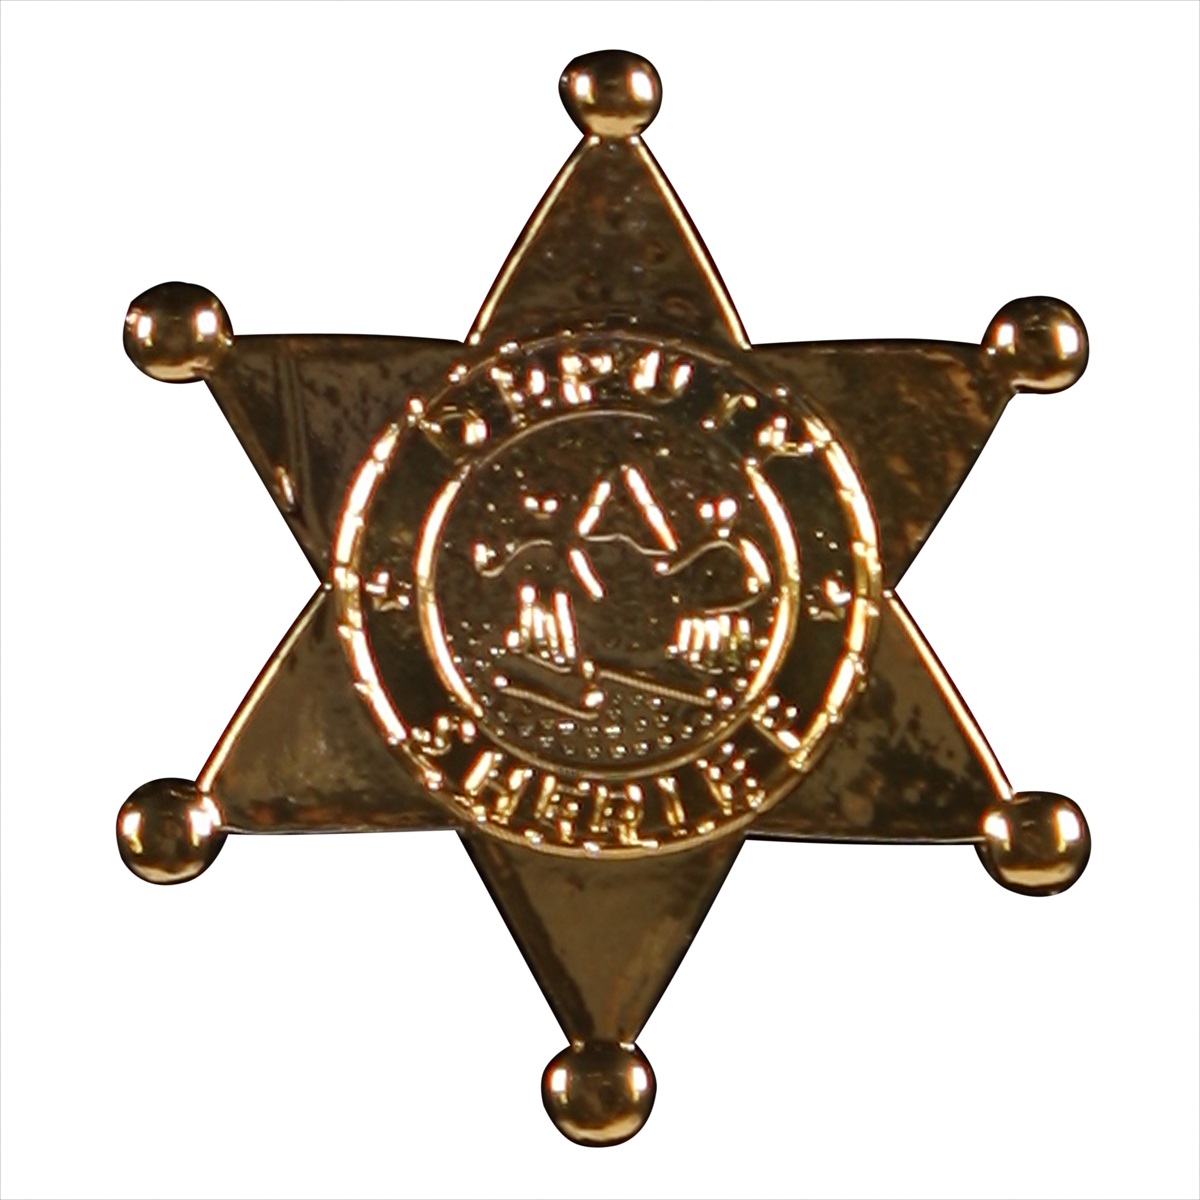 Sheriff Ster Metaal Goud